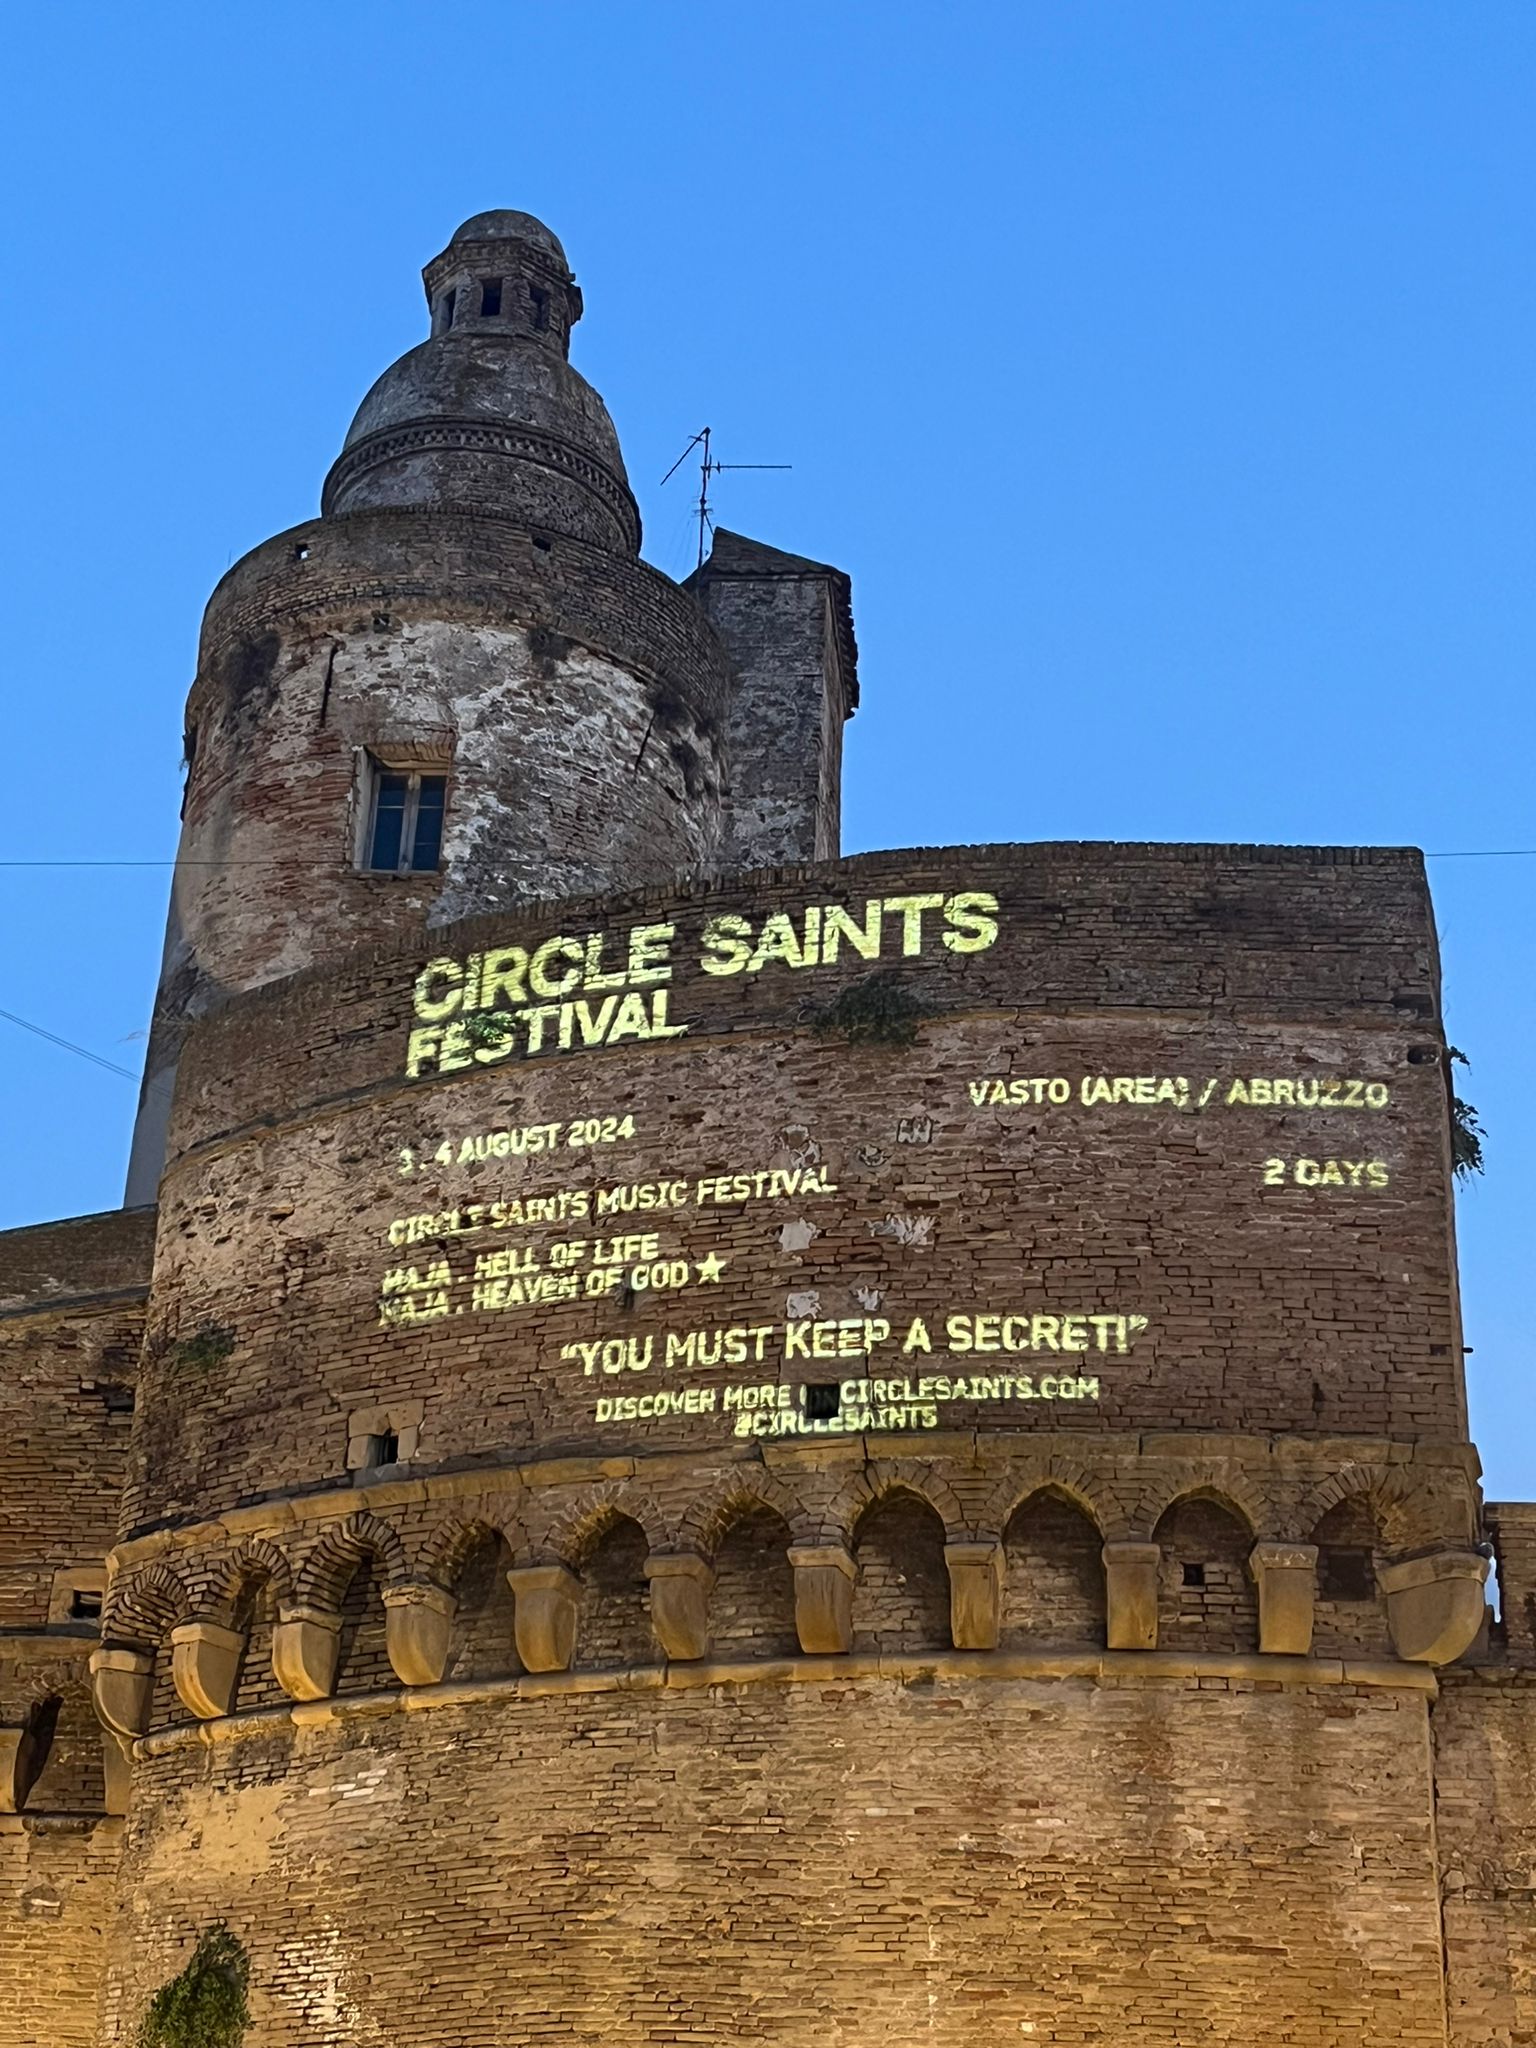 Circle Saints Festival,  per i prossimi tre giorni illuminerà una delle facciate del Castello Caldoresco